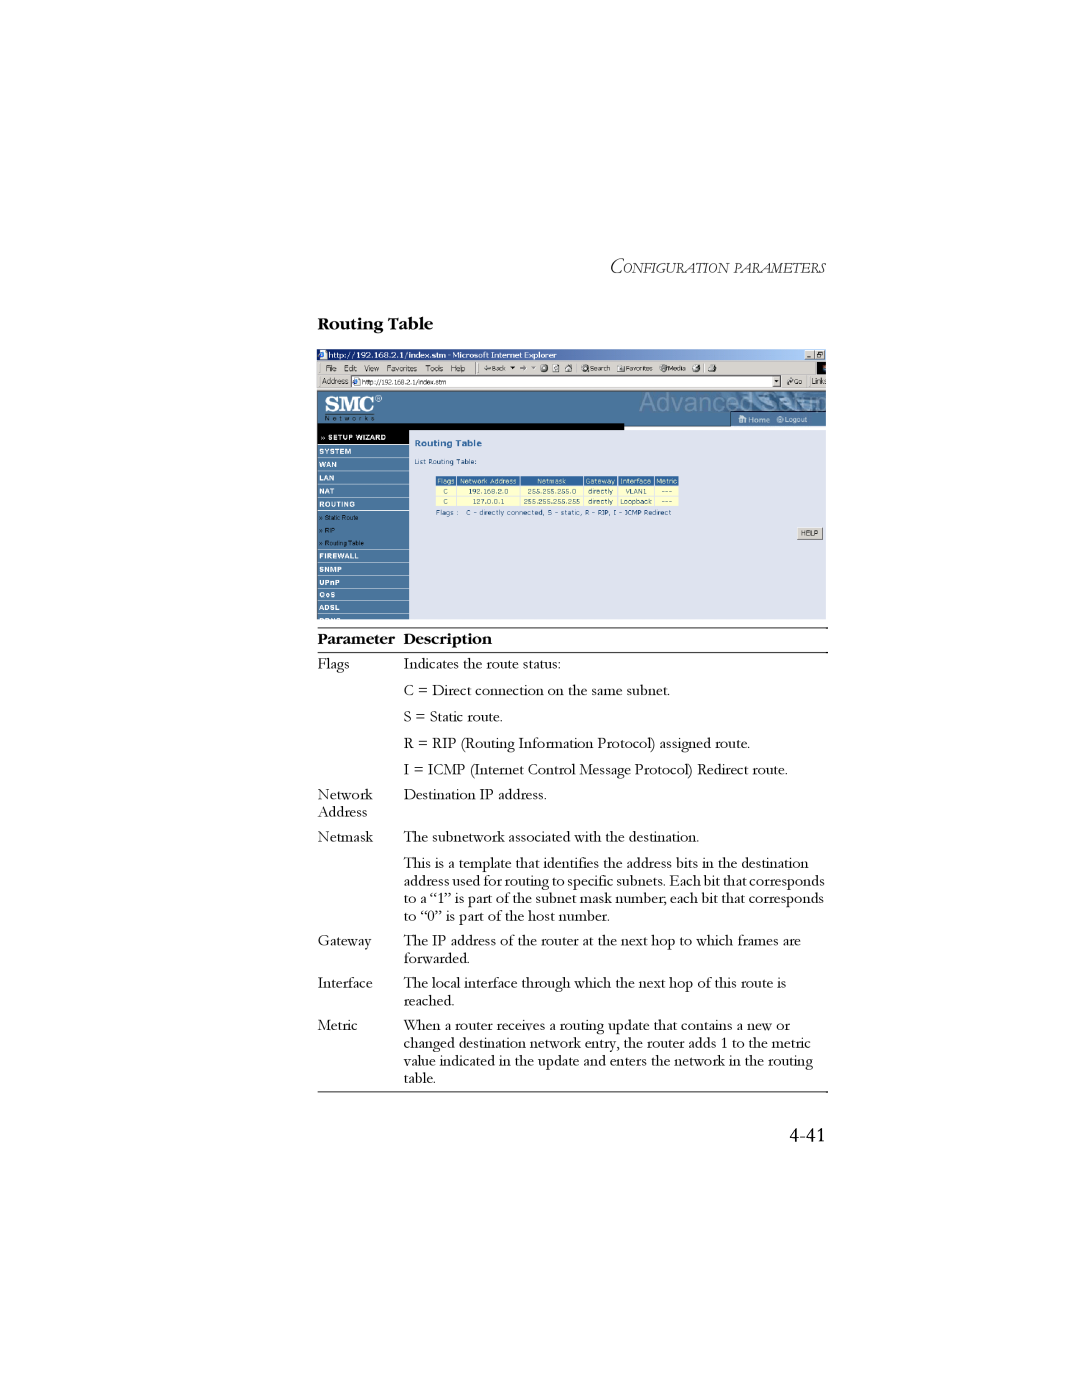 SMC Networks SMC7904BRB2 manual 4-41, Routing Table, Parameter Description 